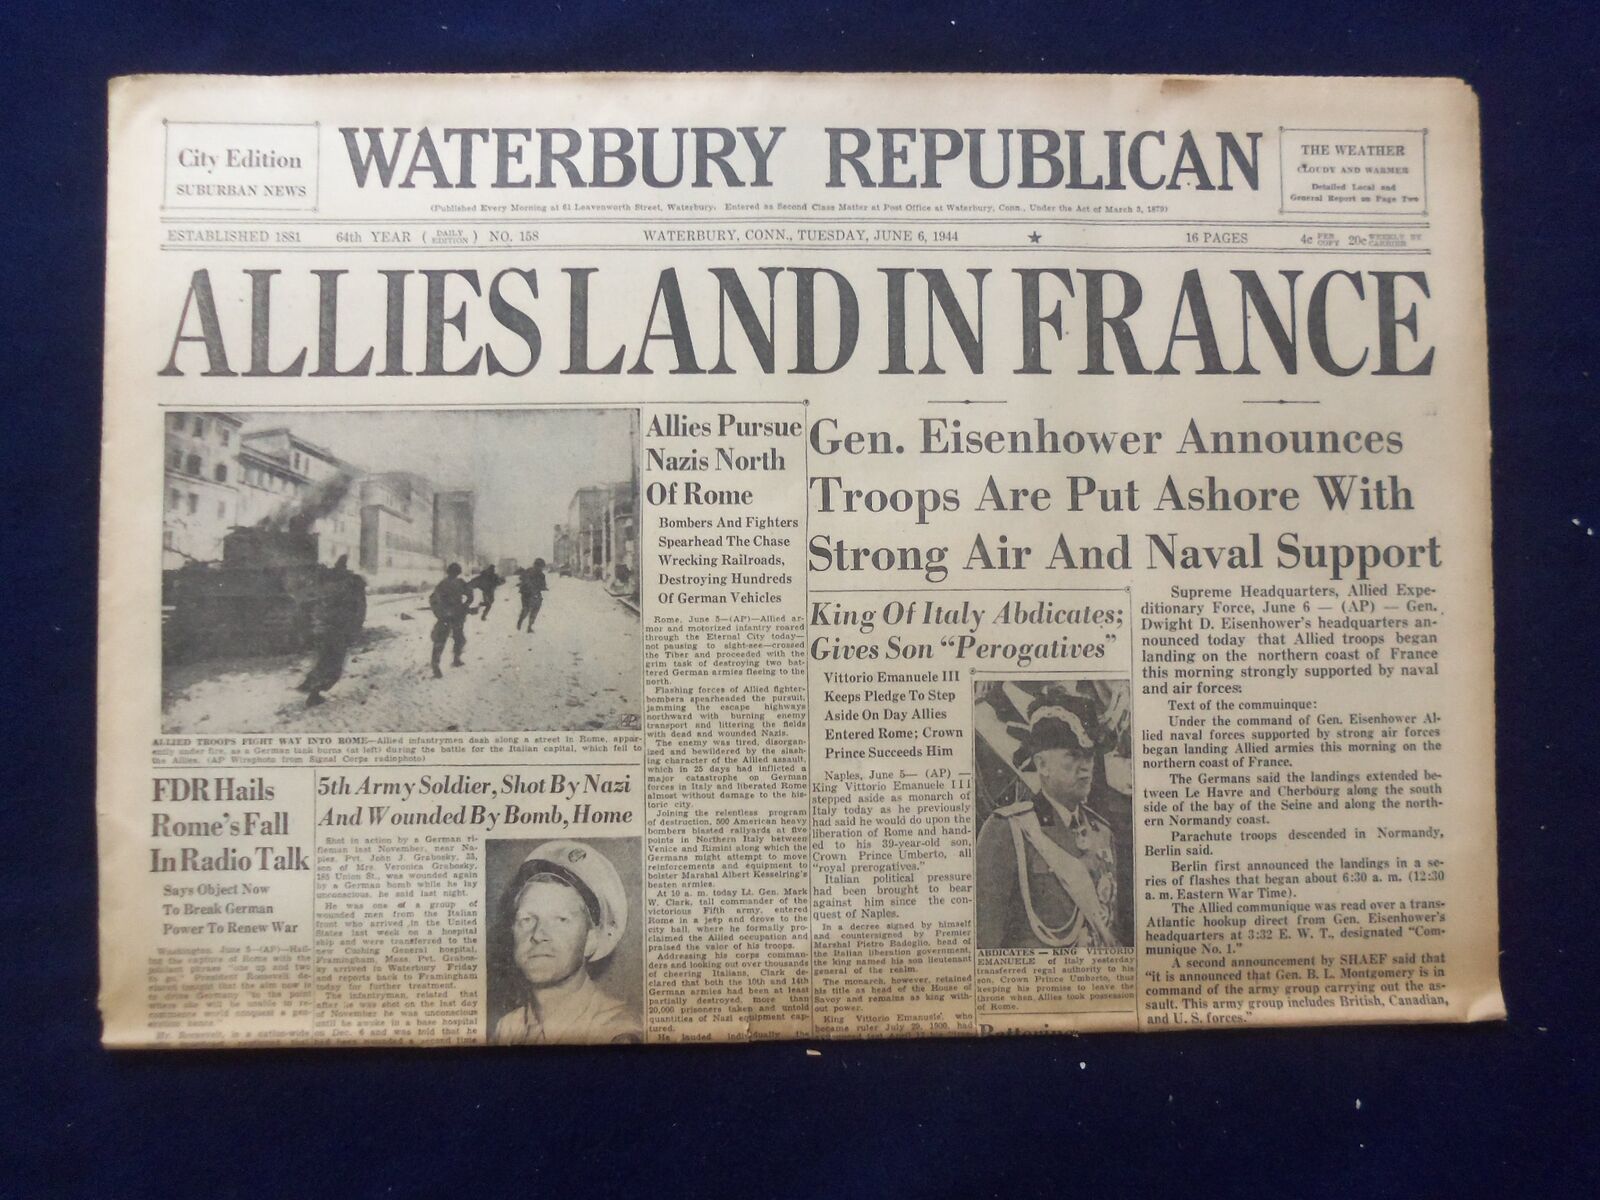 1944 JUNE 6 WATERBURY REPUBLICAN NEWSPAPER - ALLIES LAND IN FRANCE - NP 6464